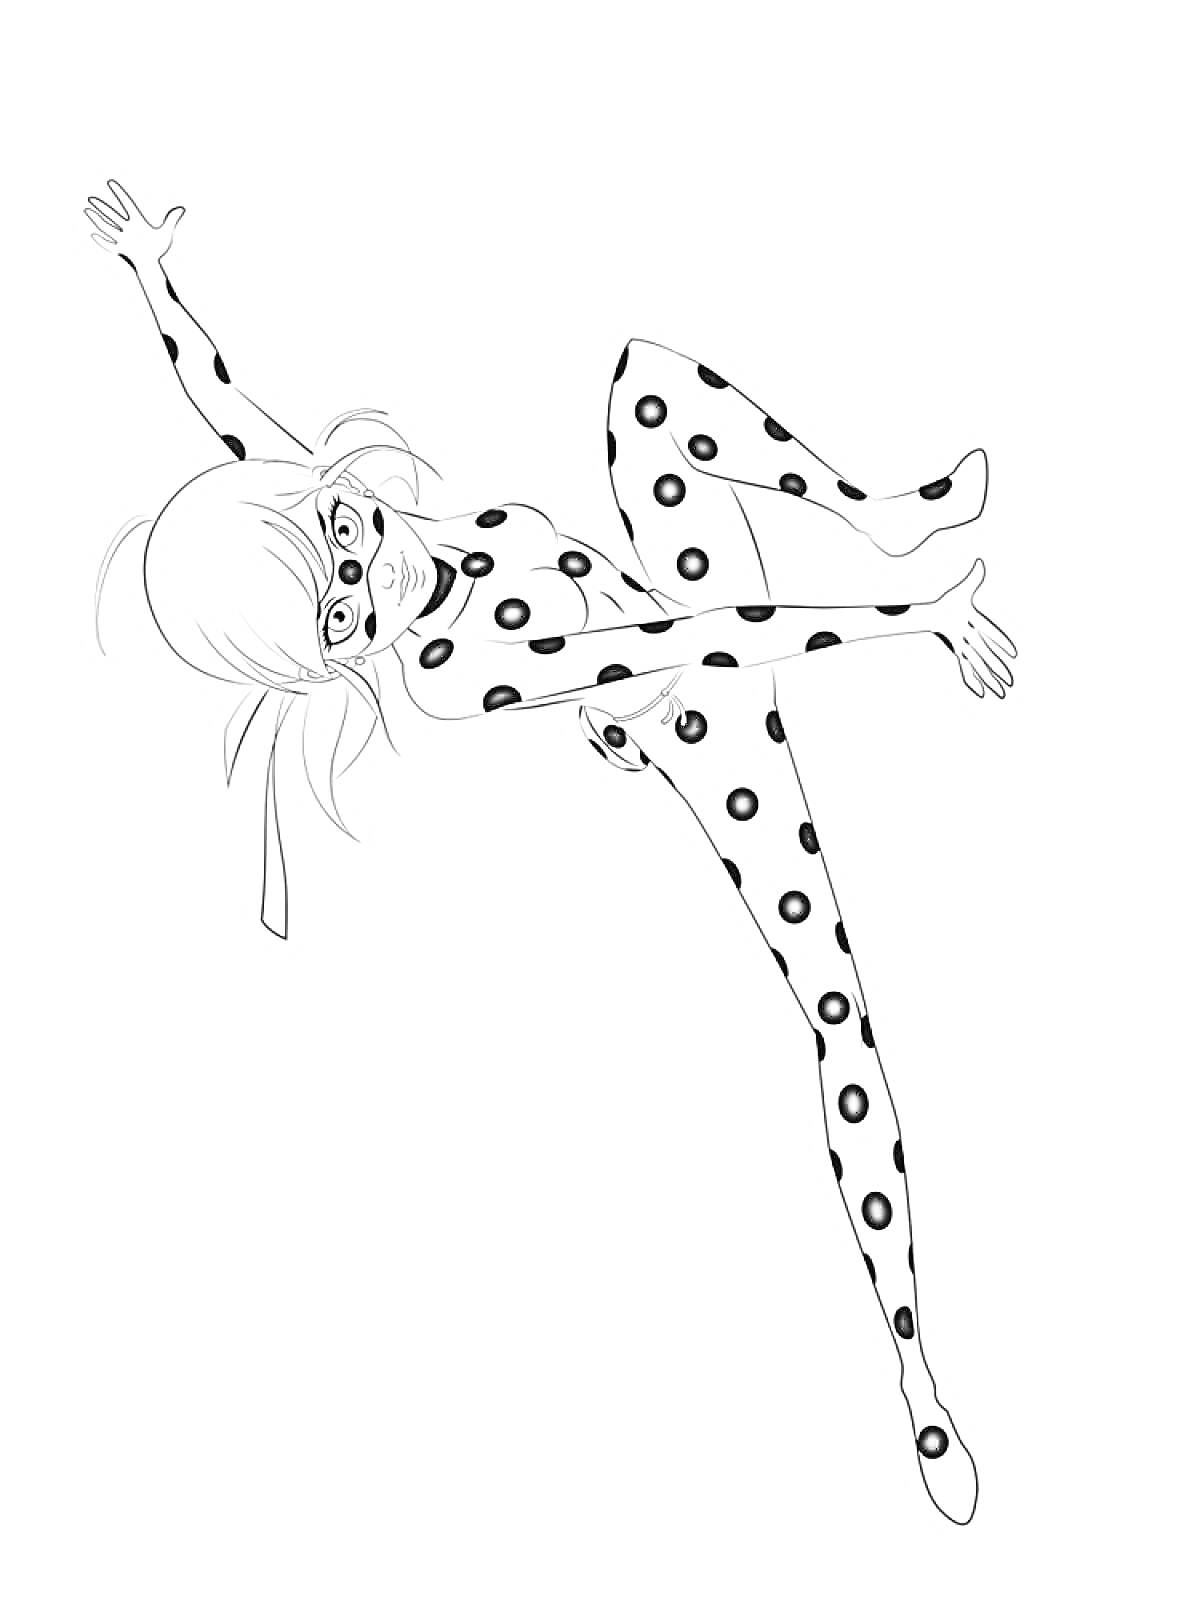 Раскраска Леди Баг в прыжке, в костюме с точками, с маской на лице и развевающимися волосами